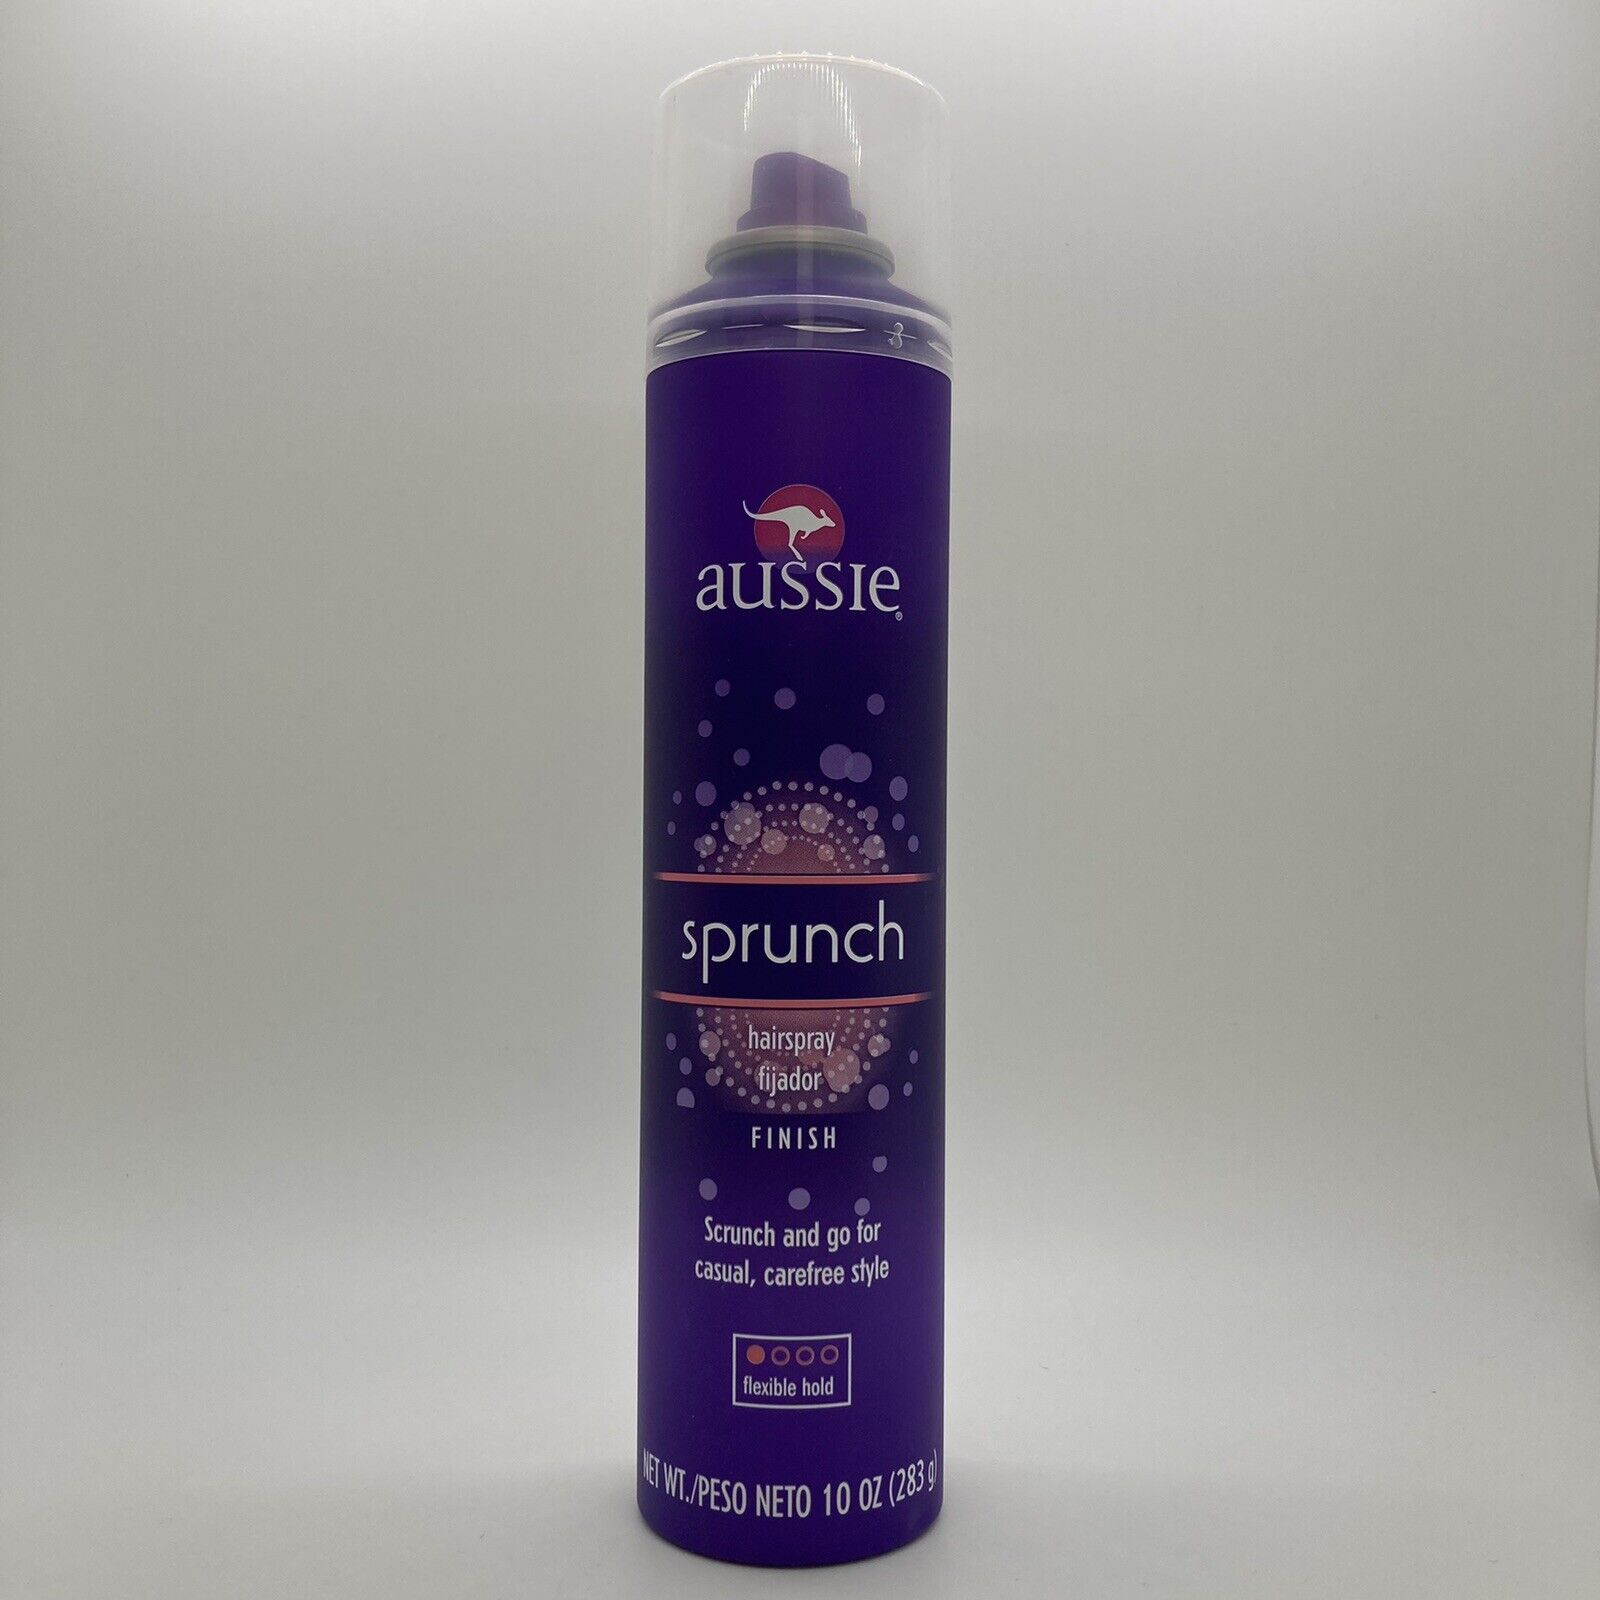 Aussie Sprunch Aerosol Flexible Hold Hairspray Finish, 10 oz